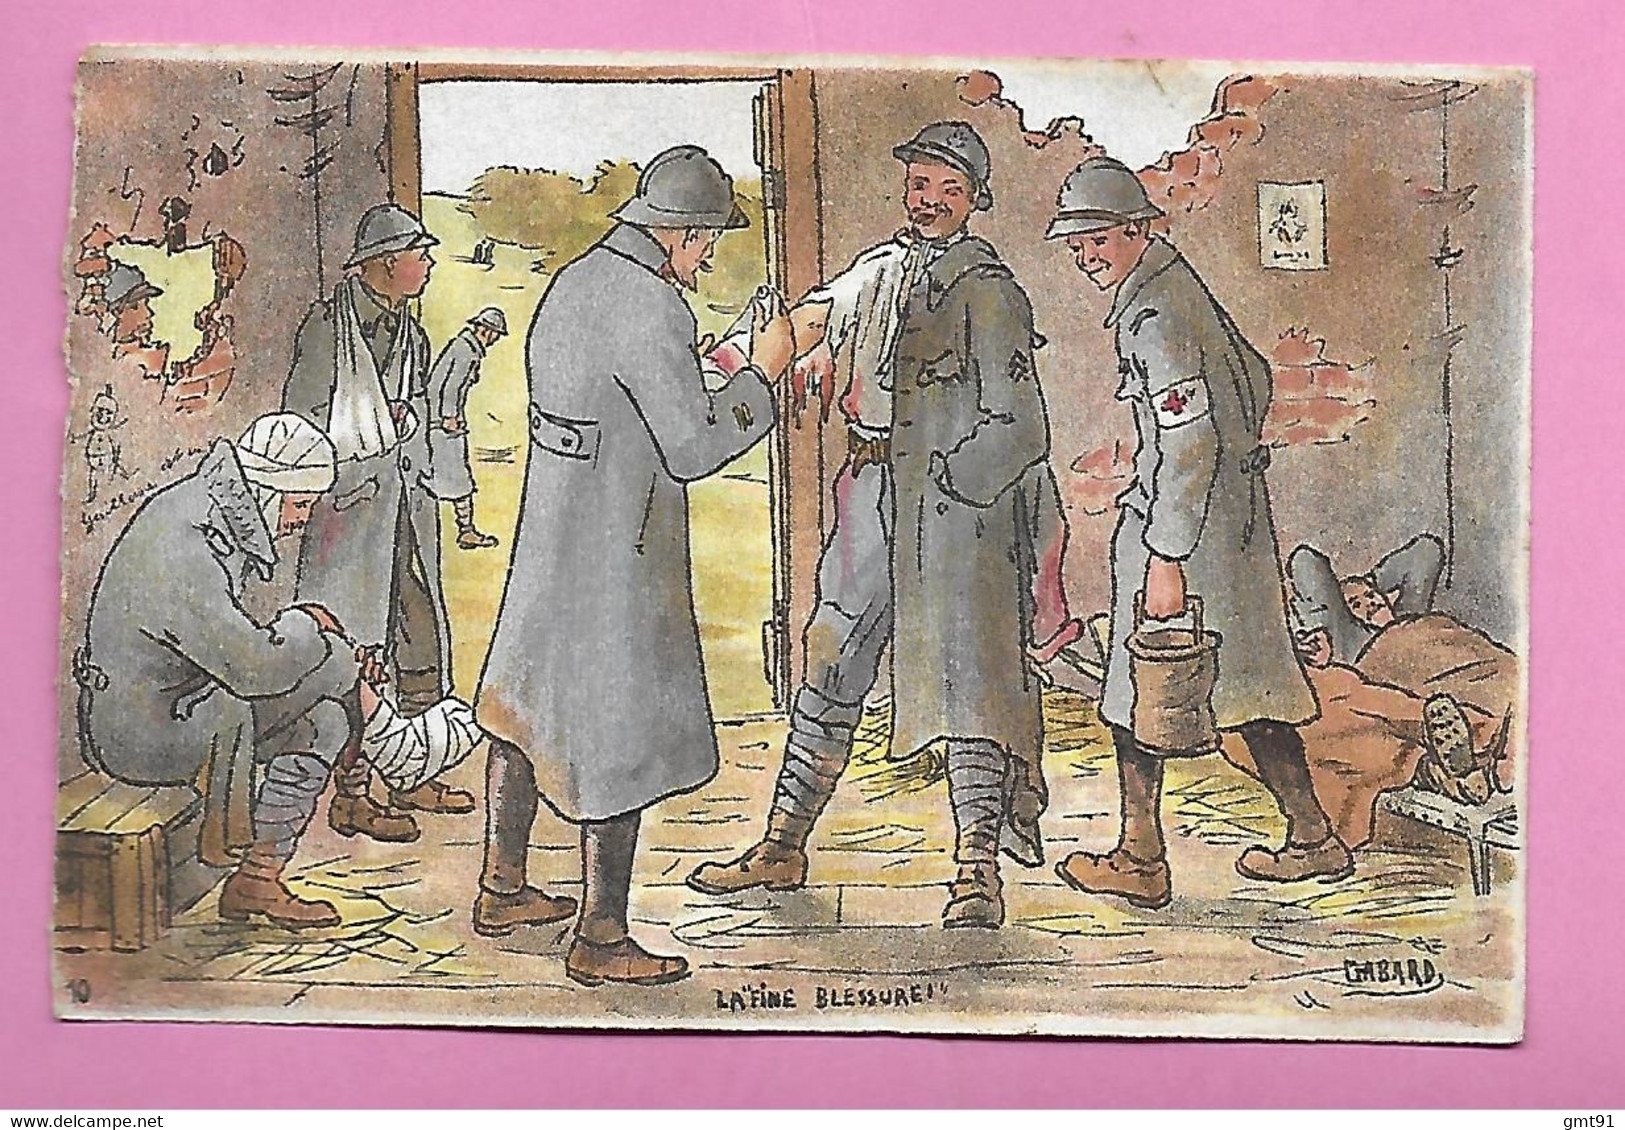 Lot de 8 CPA Illustration signée GABARD ( correspondance militaire hospitalisé a MILAN Italie en 1918 )